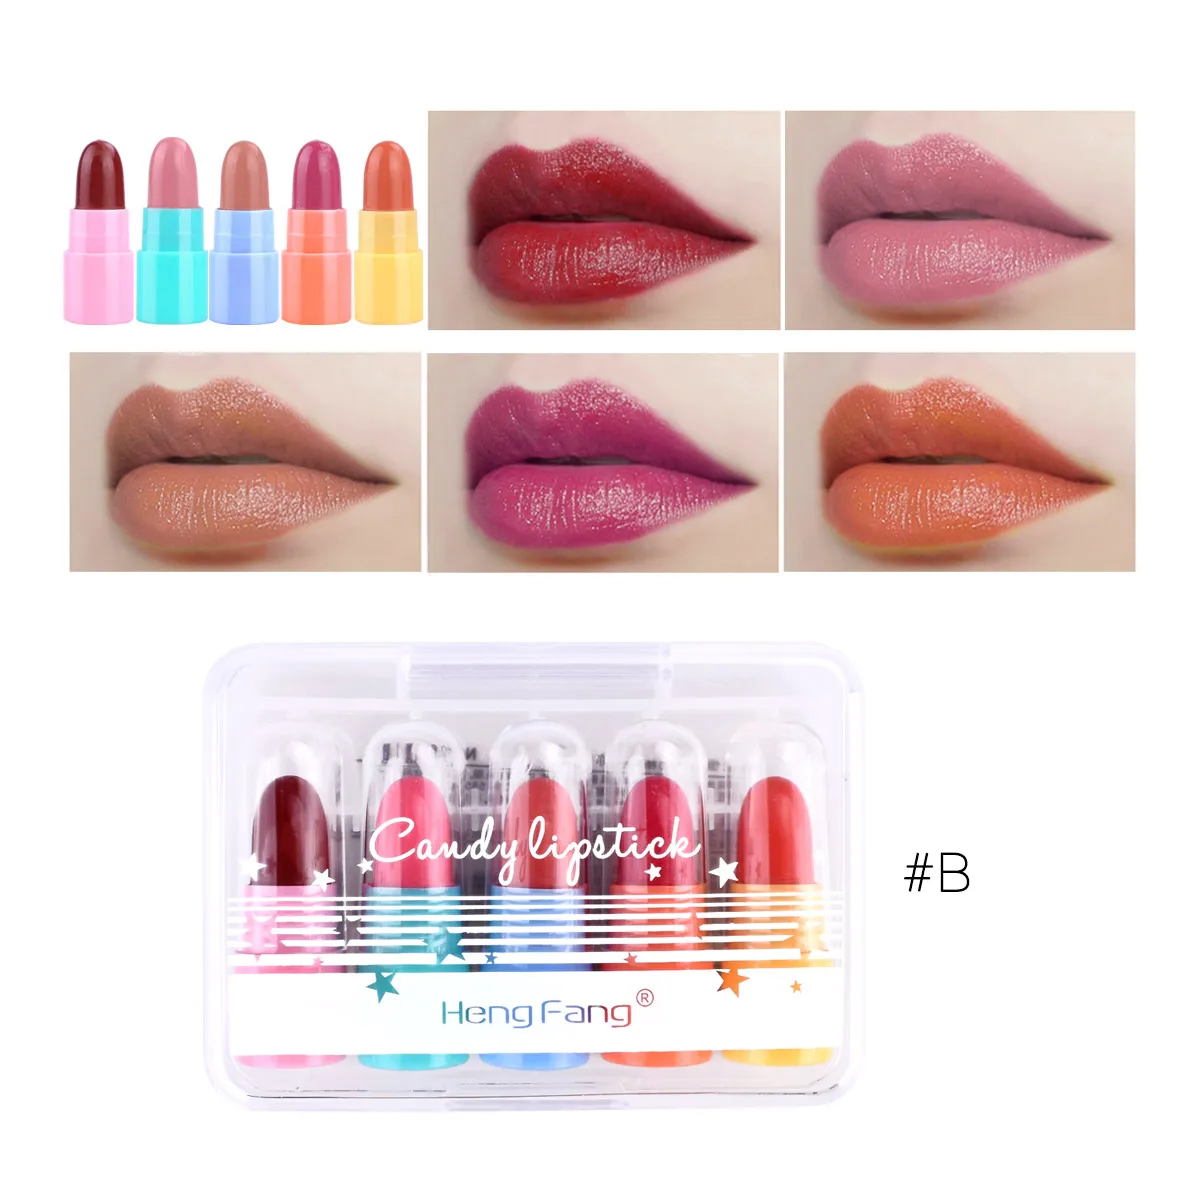 5 цветов/набор, водостойкая, долговечная, конфетная мини-помада, набор для путешествий, 1.2gx5, макияж губ, бренд HengFang#9038 - Цвет: B